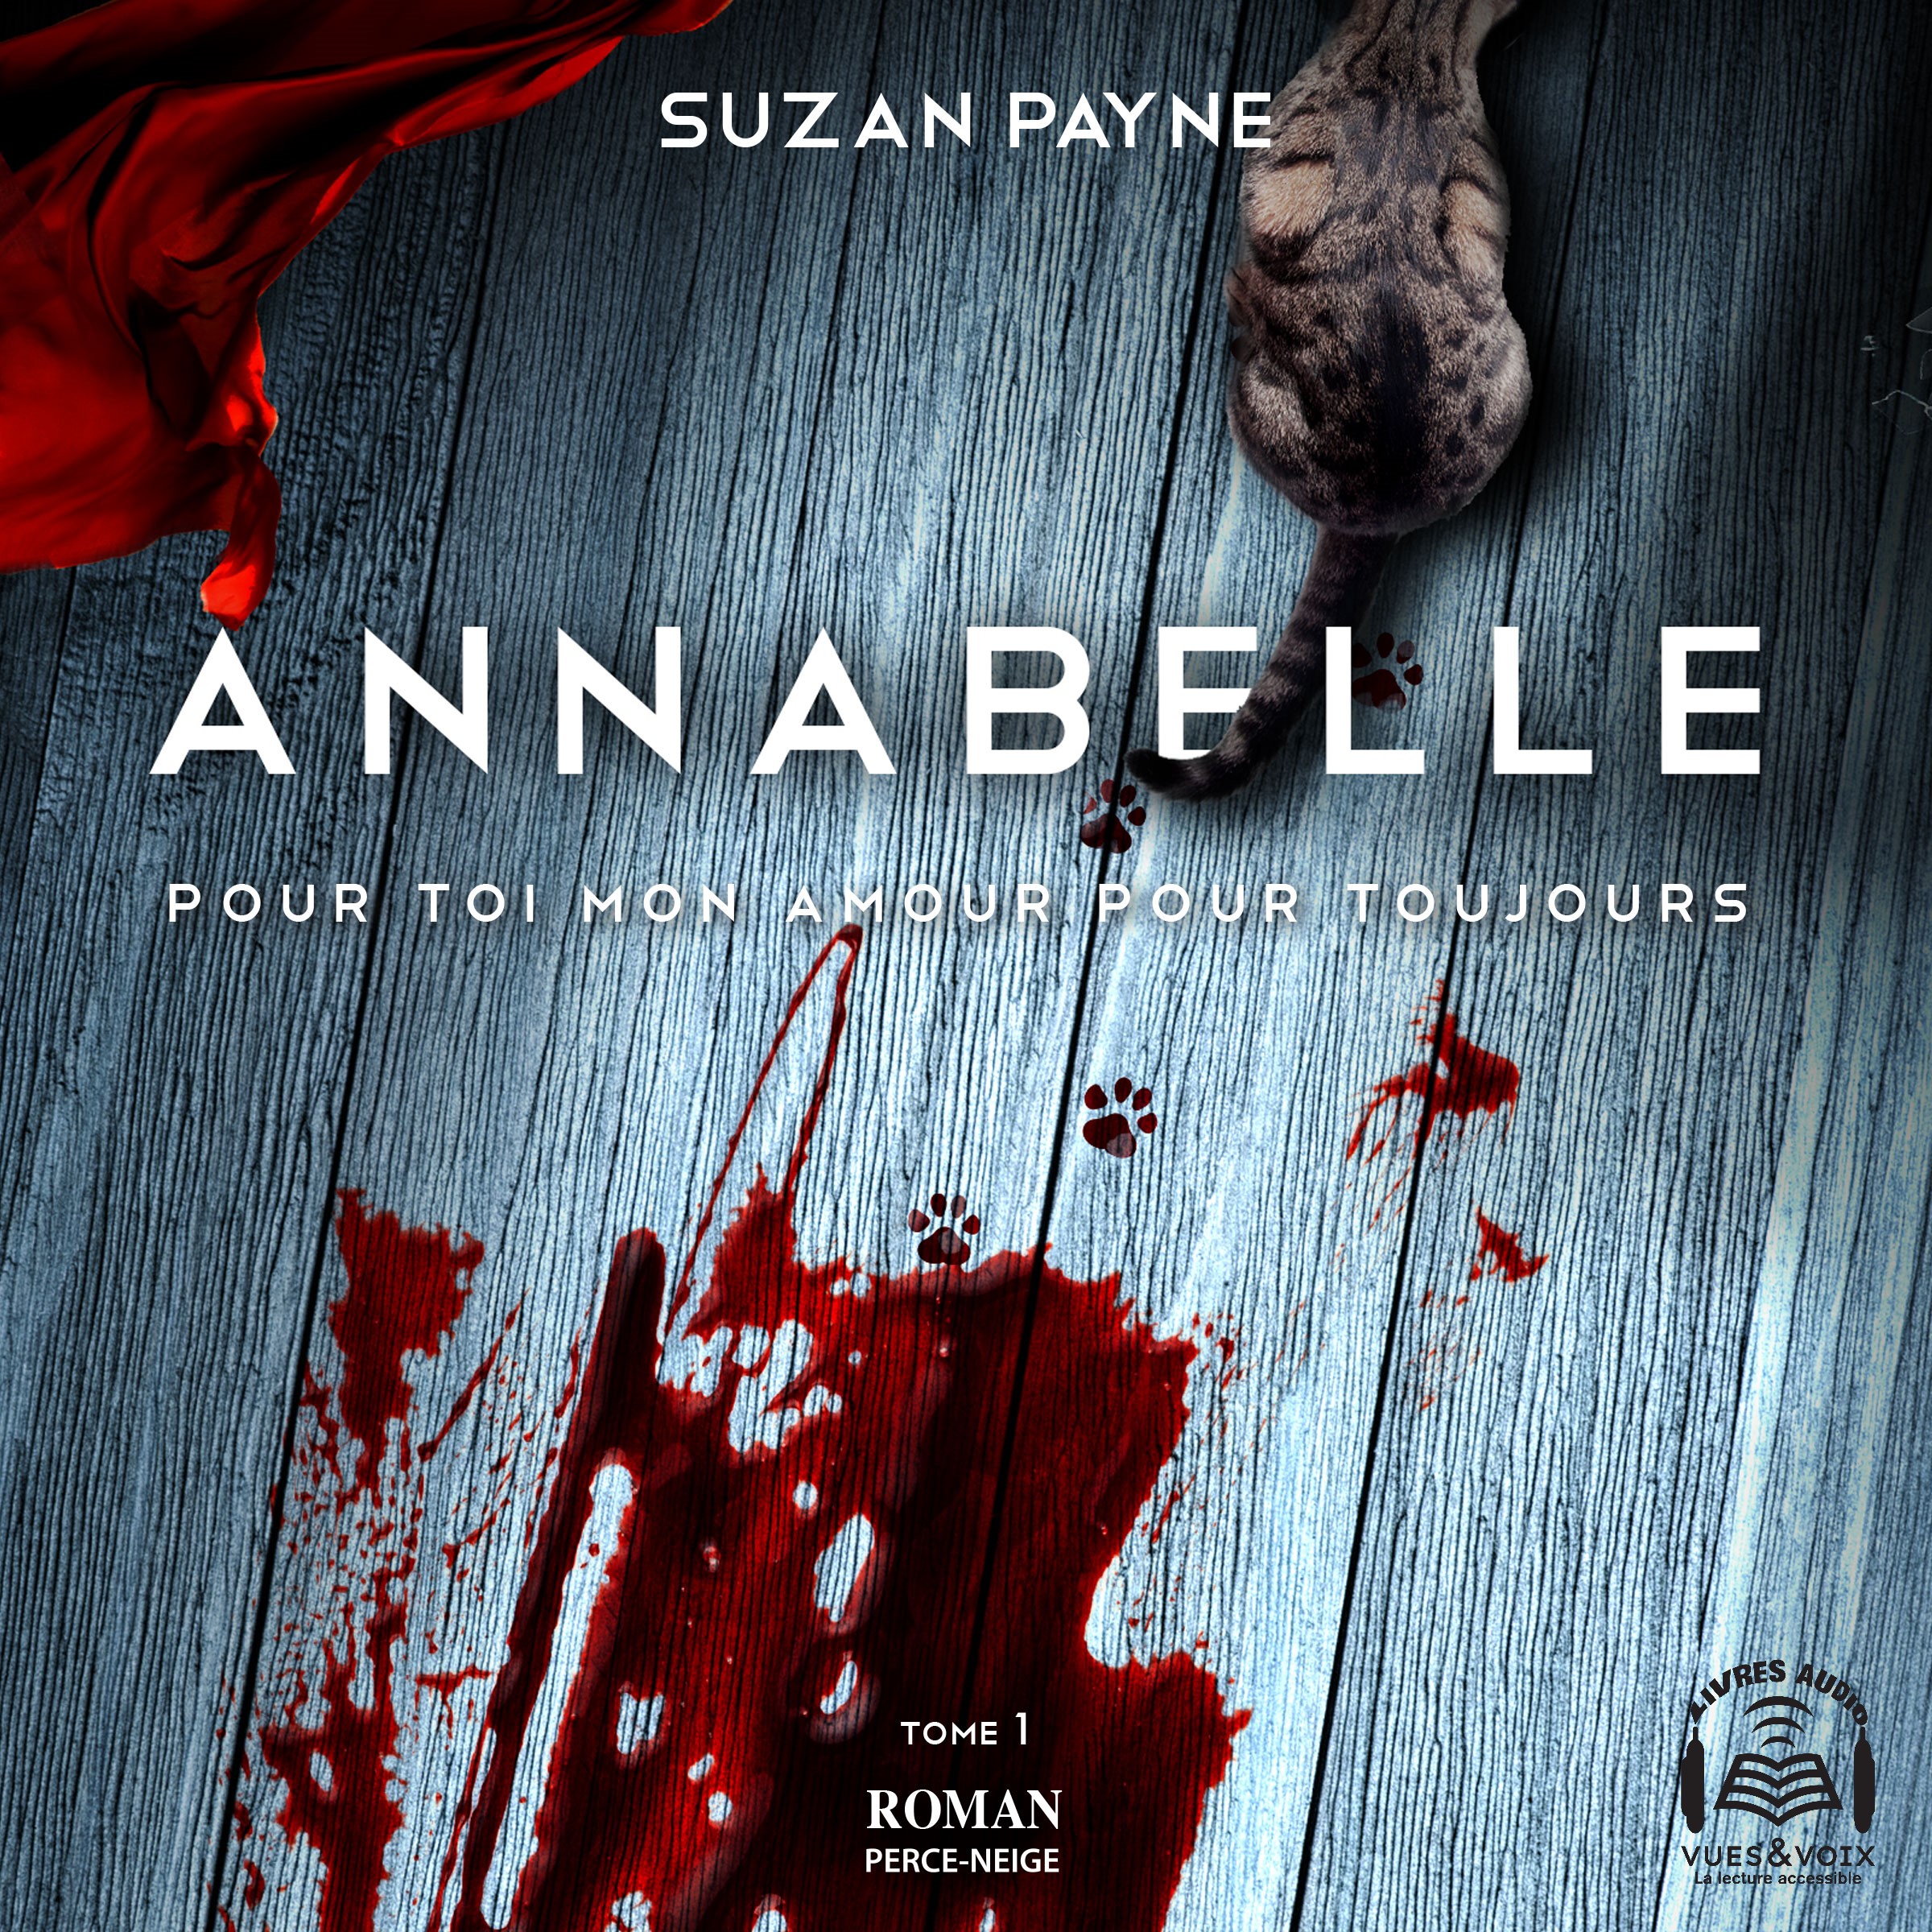 Couverture du livre audio Annabelle De Suzan Payne 